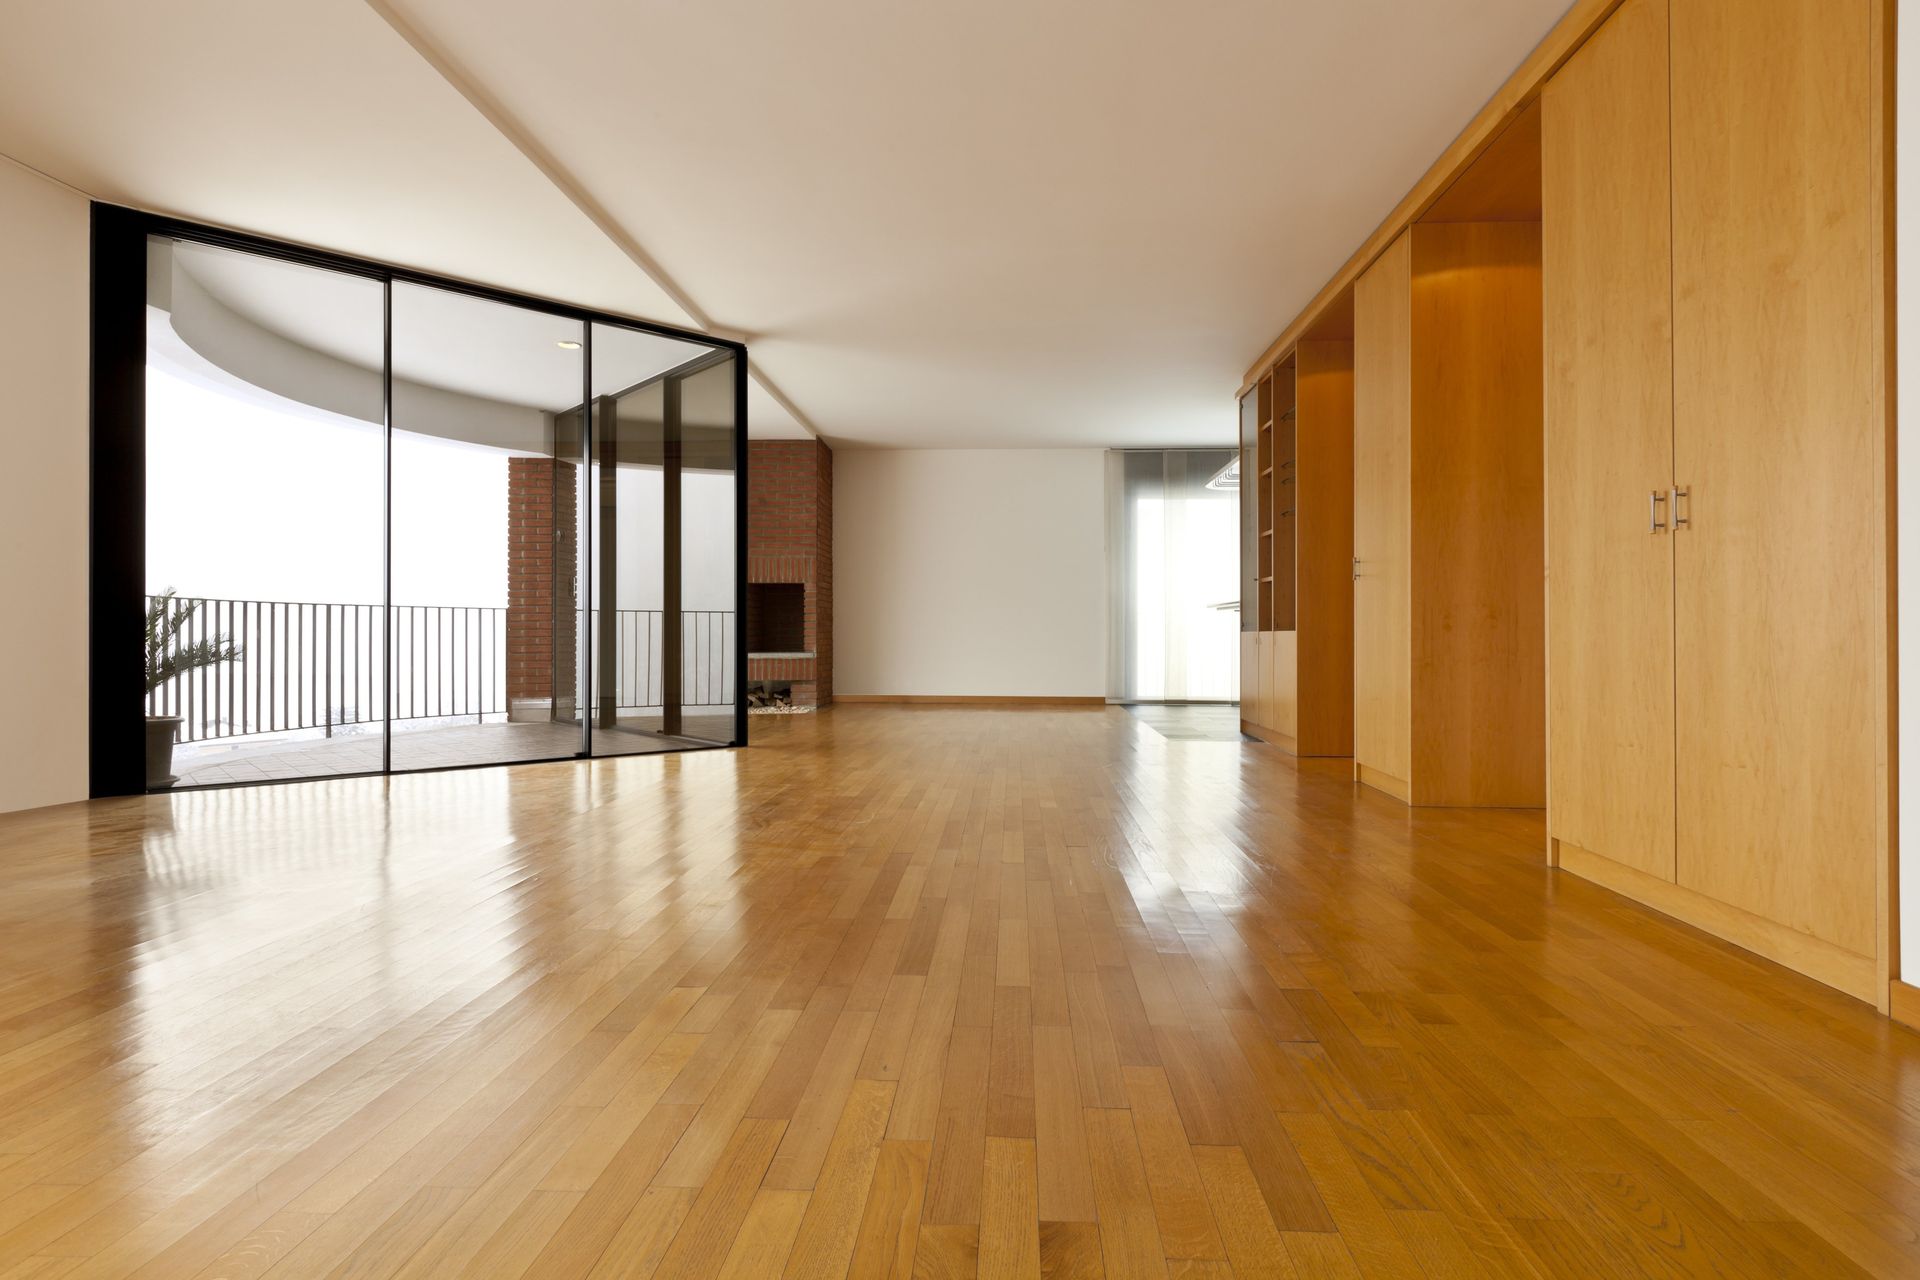 Big room with hardwood flooring